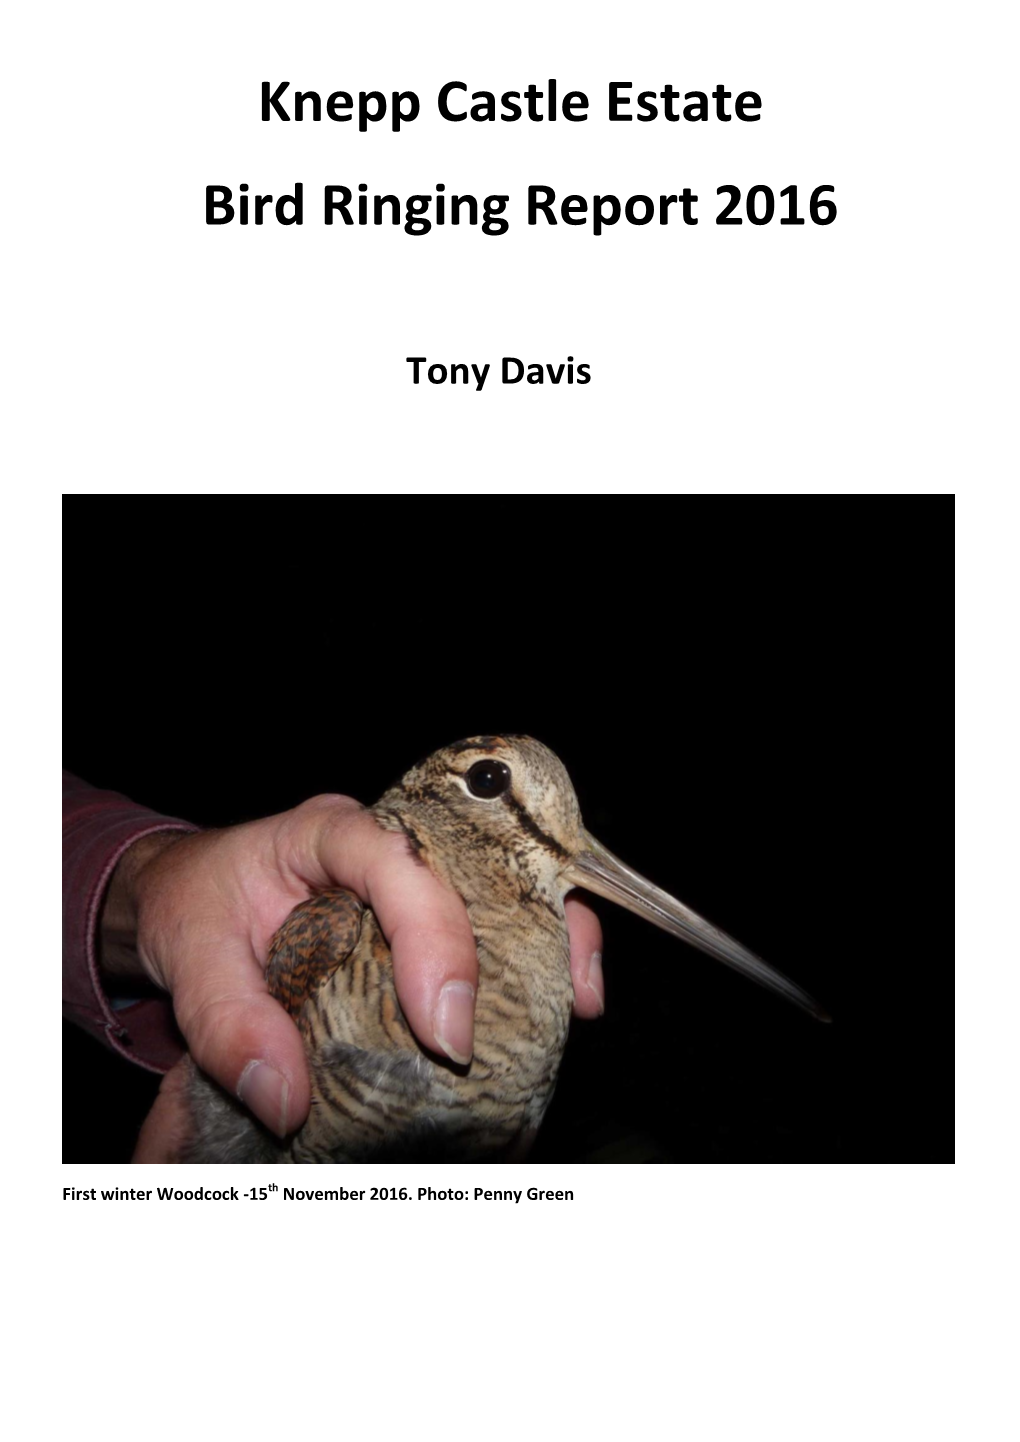 Knepp Castle Estate Bird Ringing Report 2016